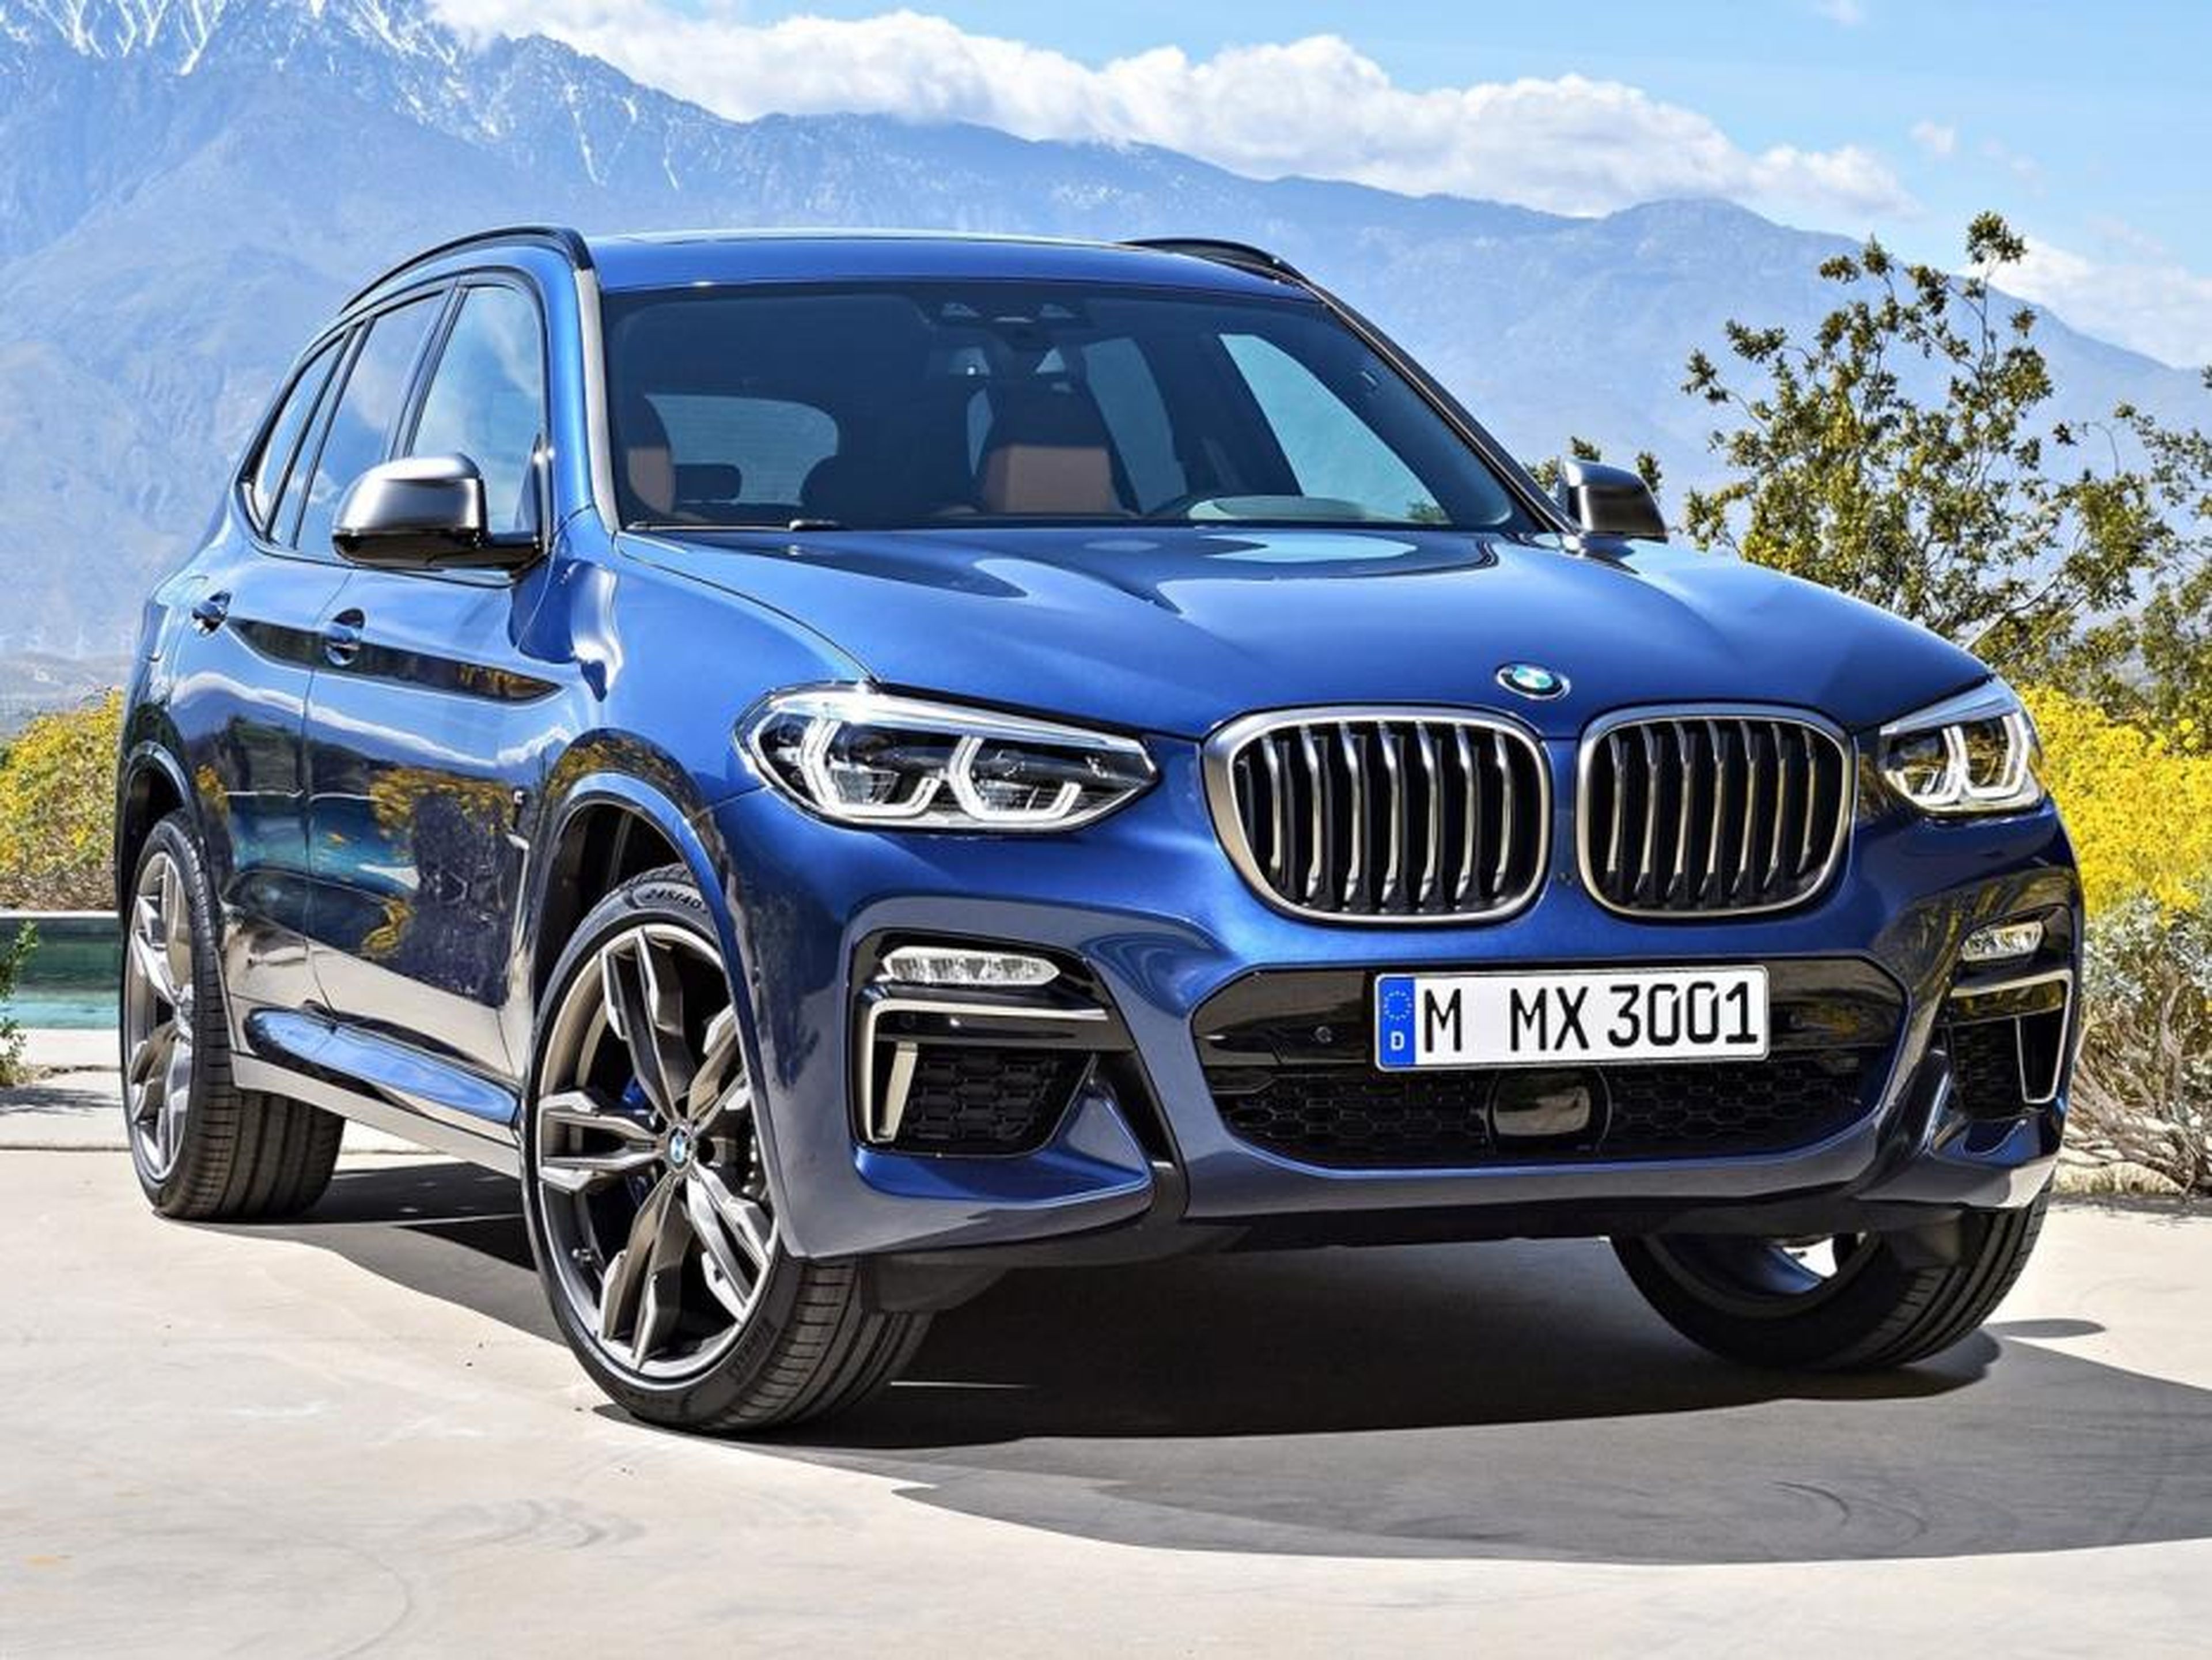 BMW X3 y X5 híbridos enchufales, confirmados para 2019